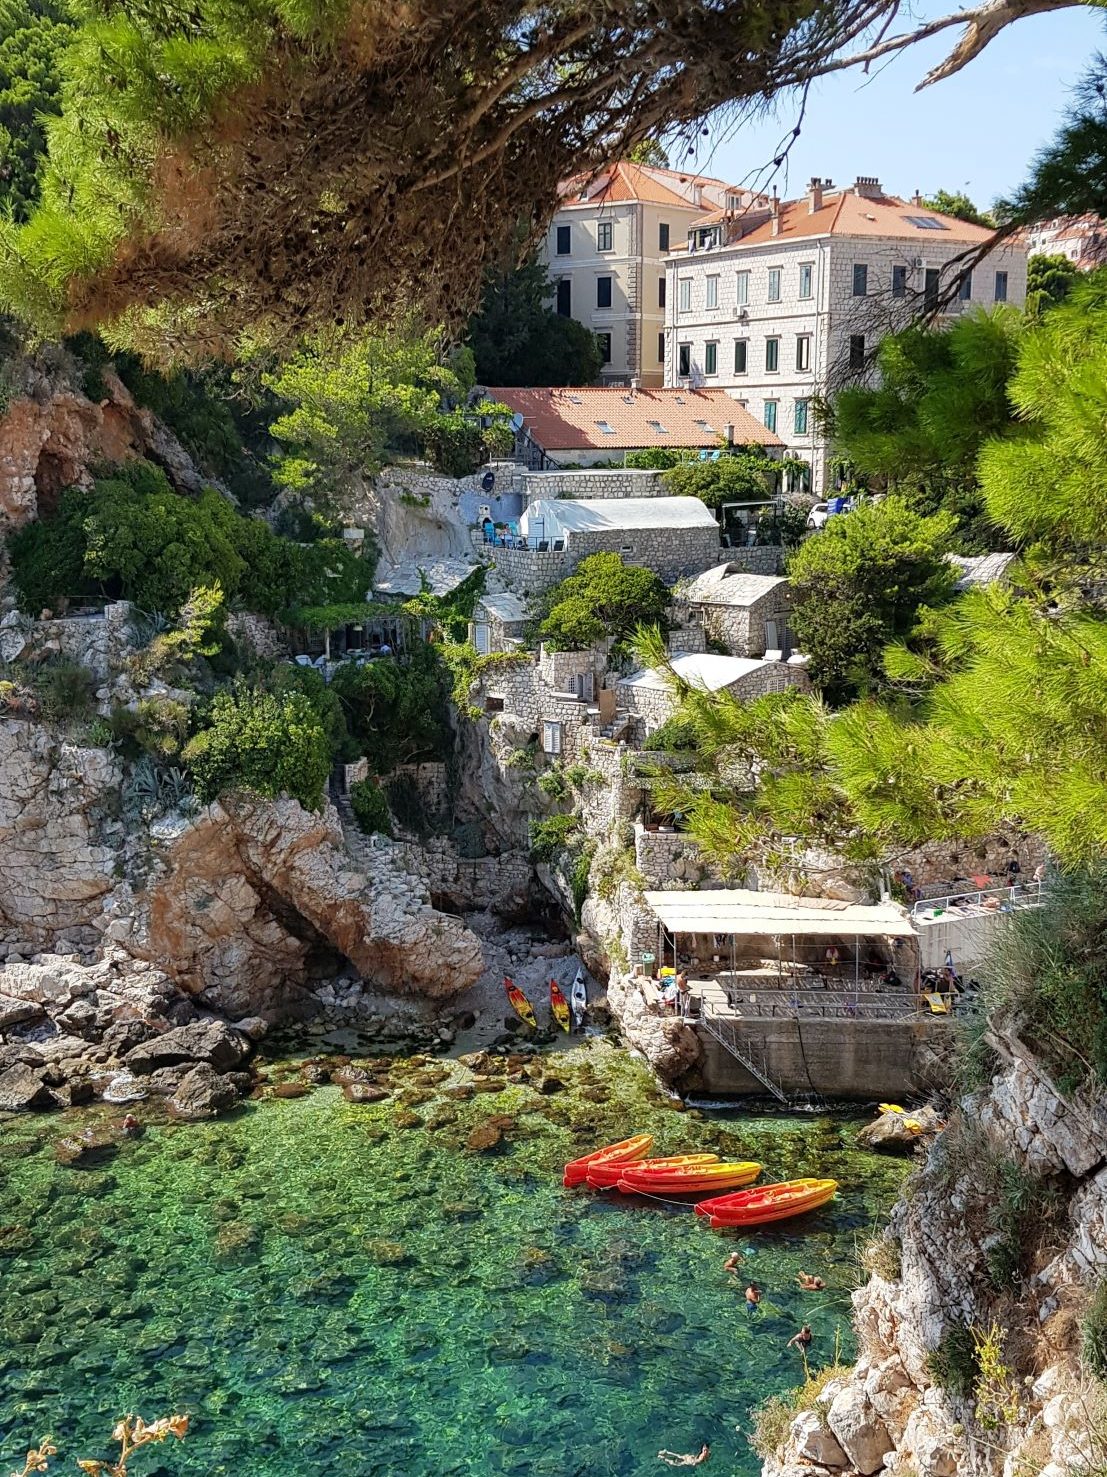 Küste in Kroatien. Häuser, Nadelbäume und Boote sind zu erkennen